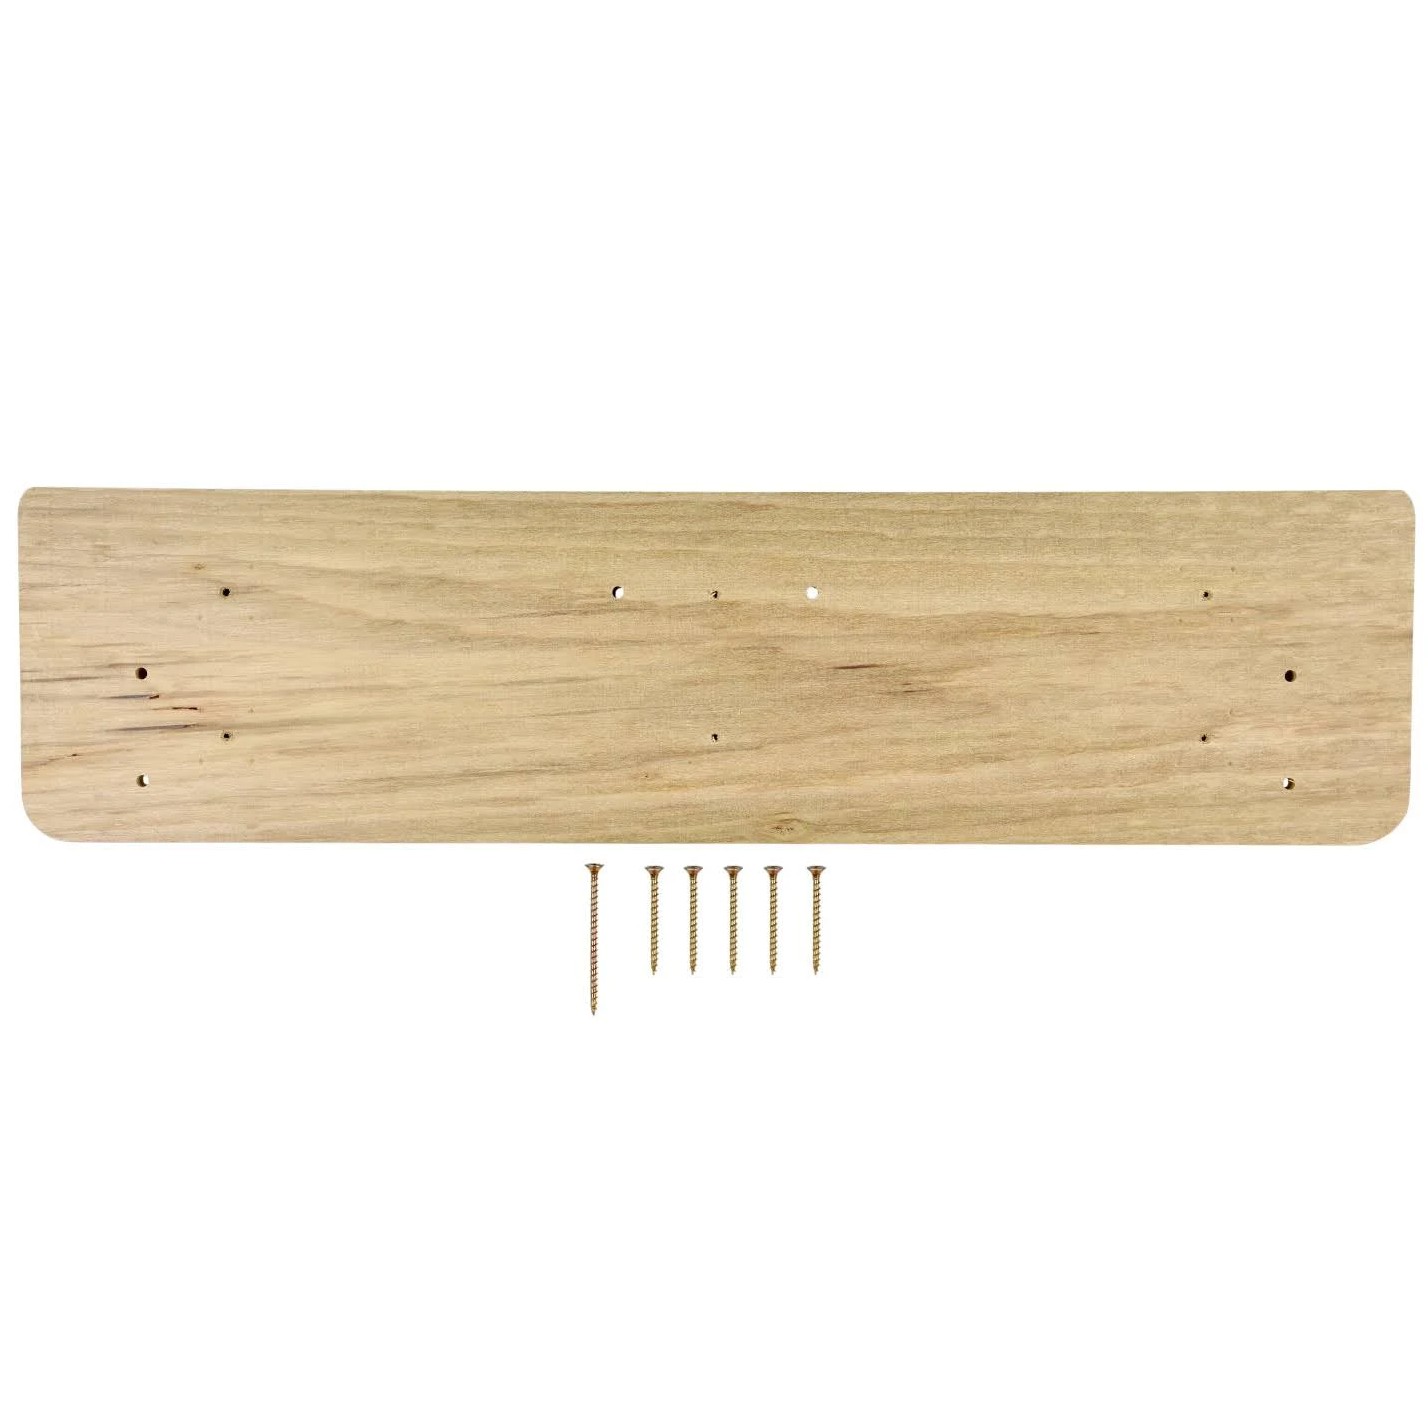 Beastmaker 2000 Series Wooden Training Board/Hangboard